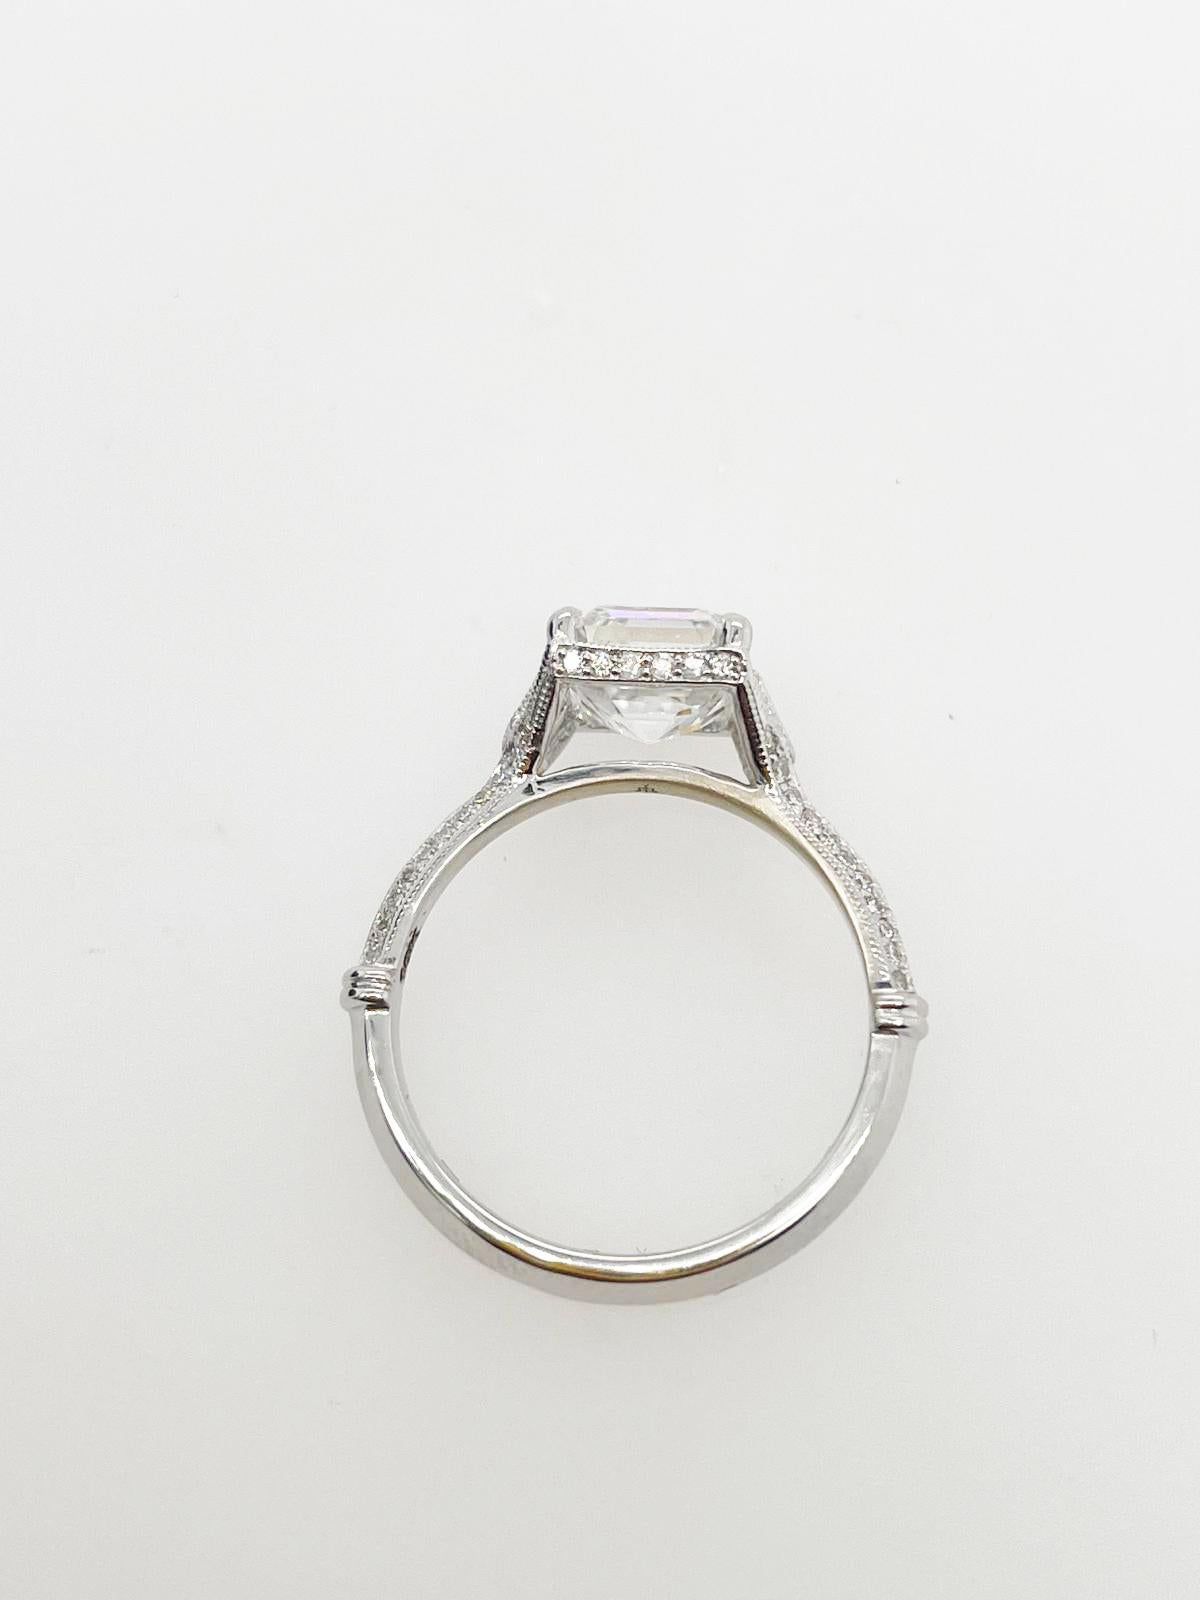 For Sale:  2ct Art Deco asscher cut diamond ring 6